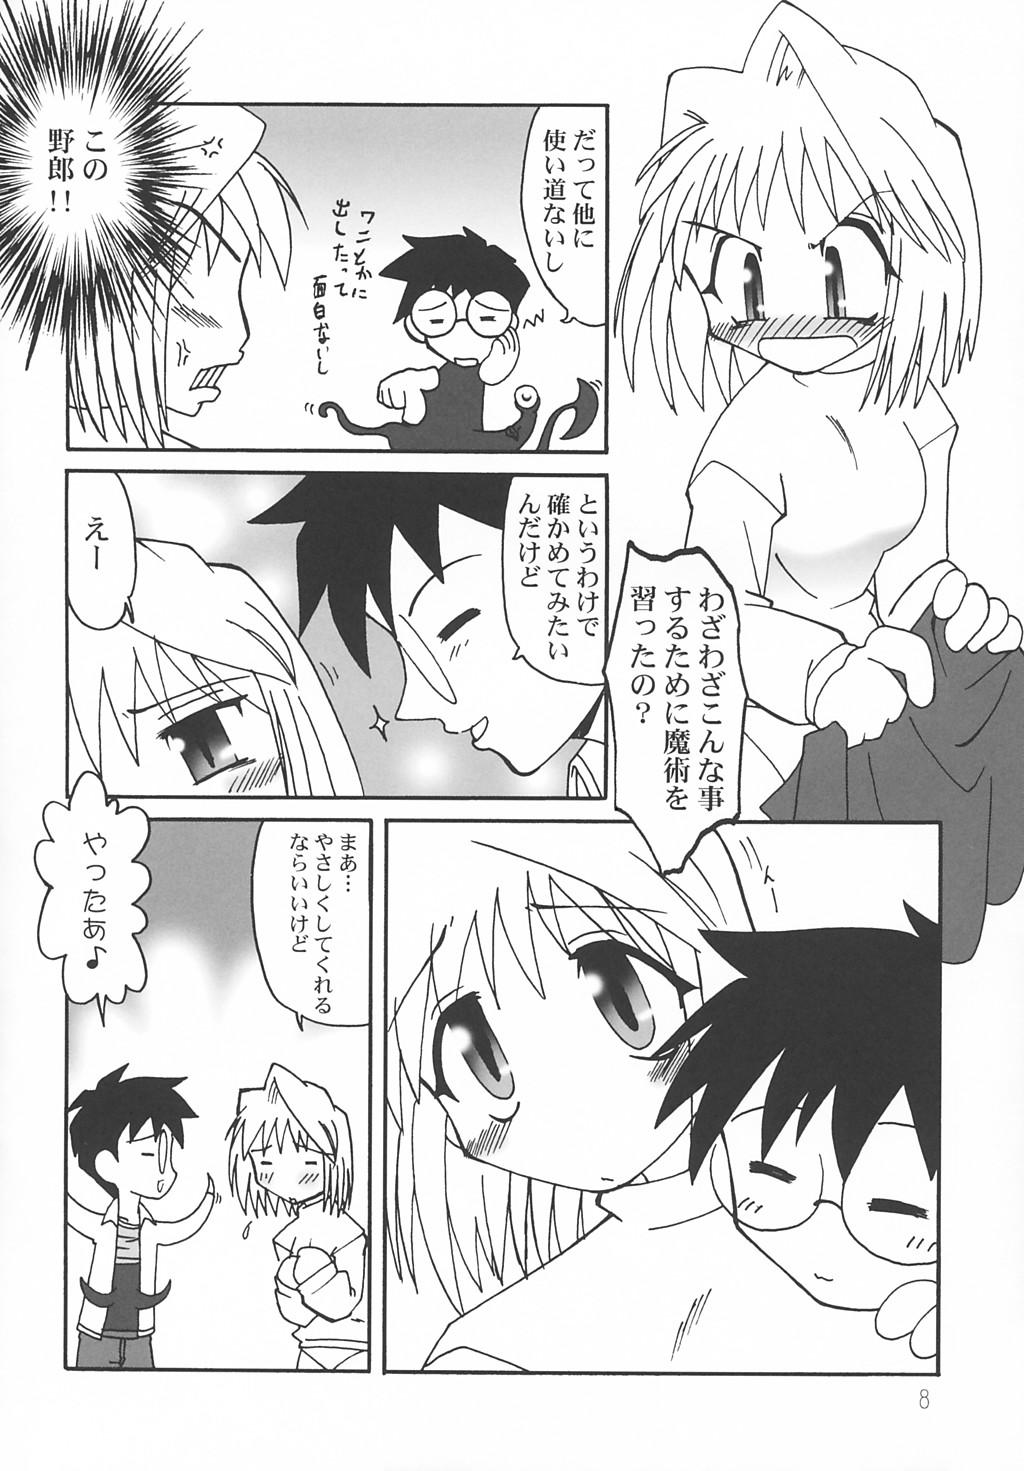 Hair Nanaya no Mori+ - Tsukihime Weird - Page 7